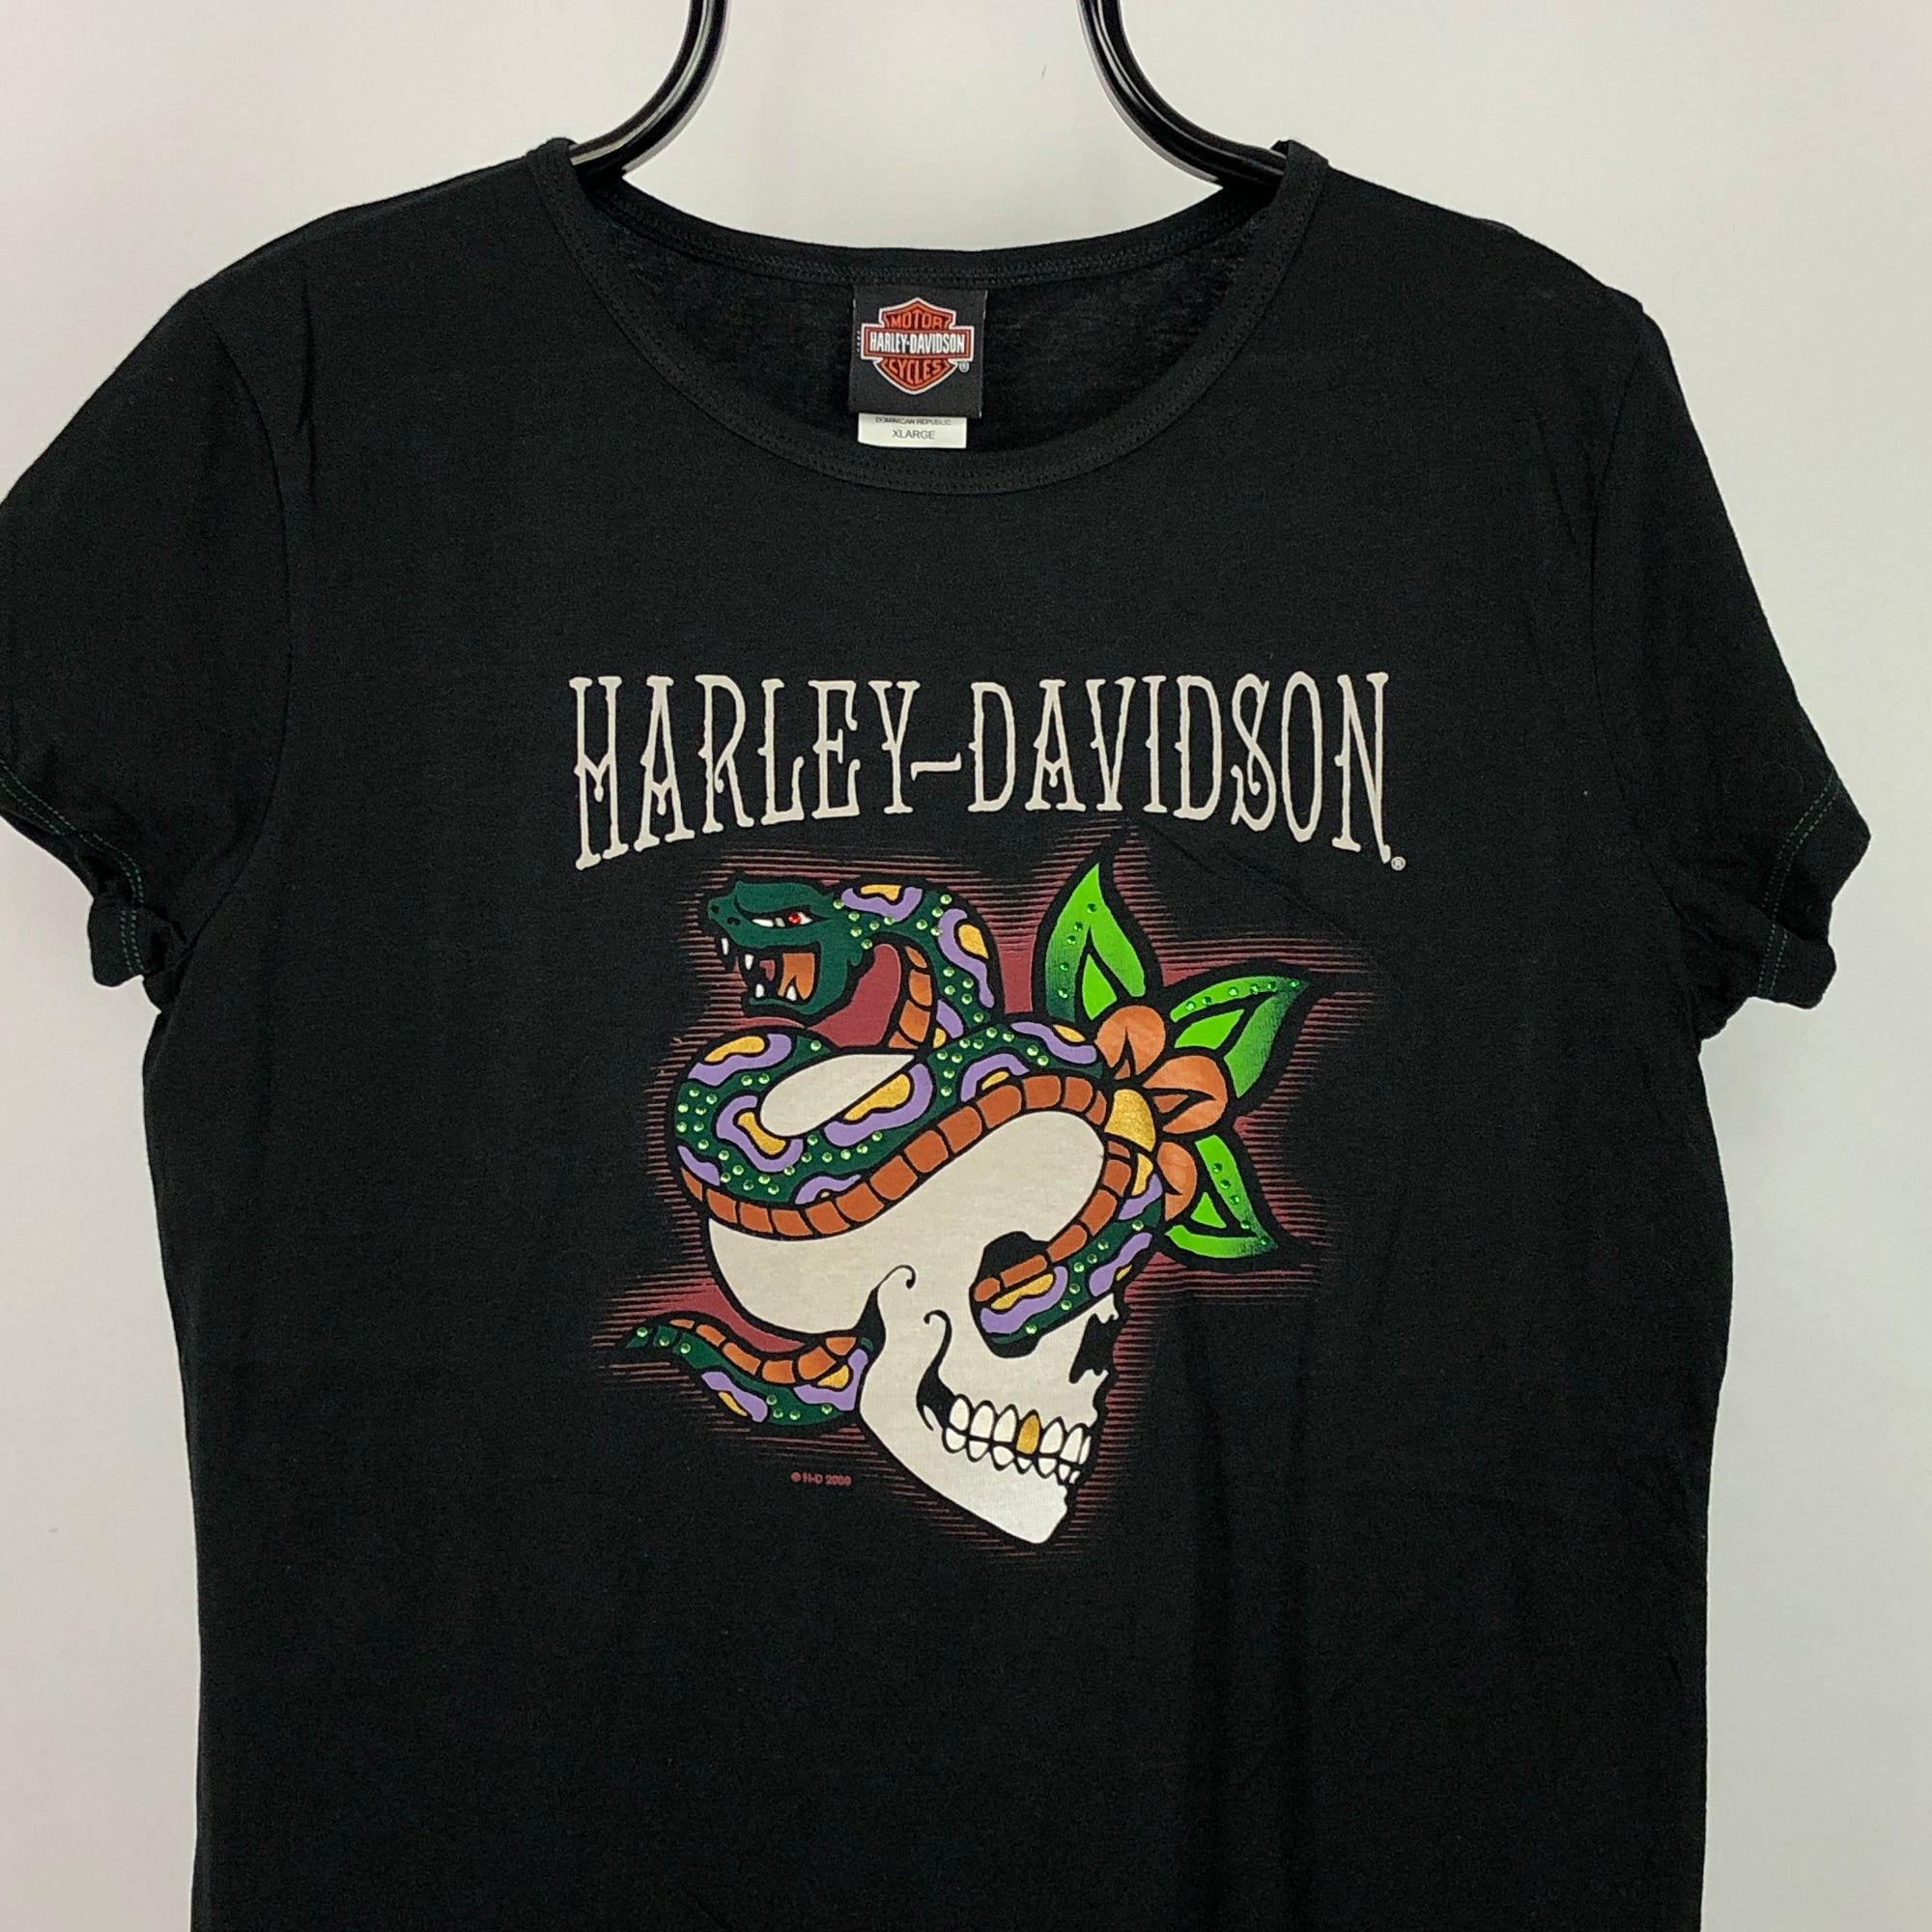 Harley Davidson Snake Skull Tee - Men's Small/Women's Large